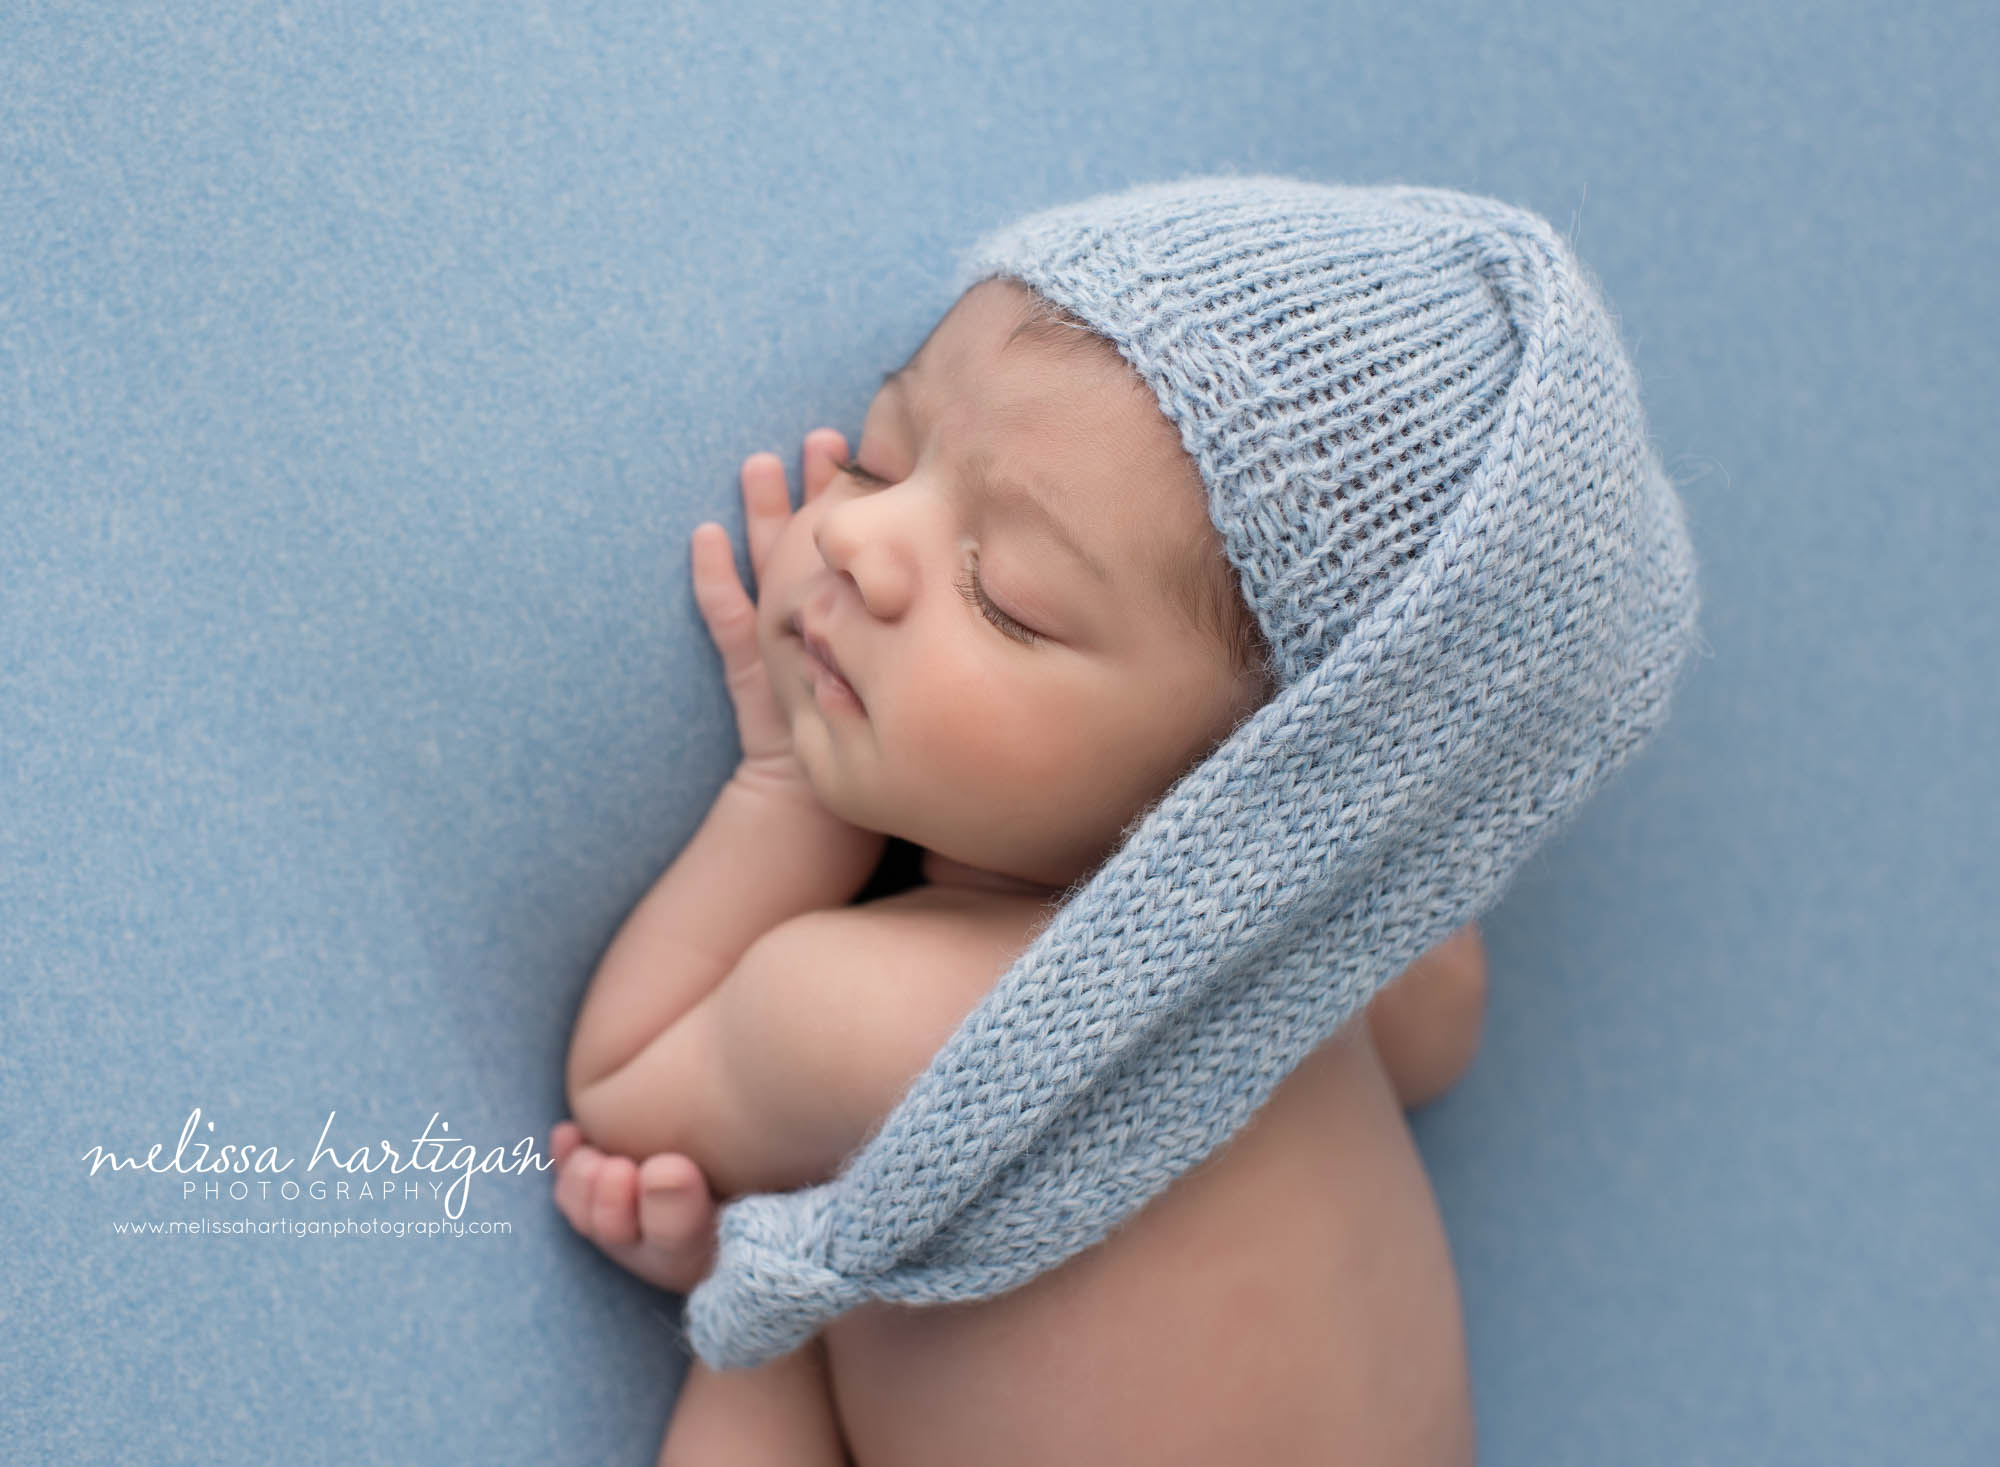 newborn boy posed on blue backdrop wearing knitted blue sleepy cap